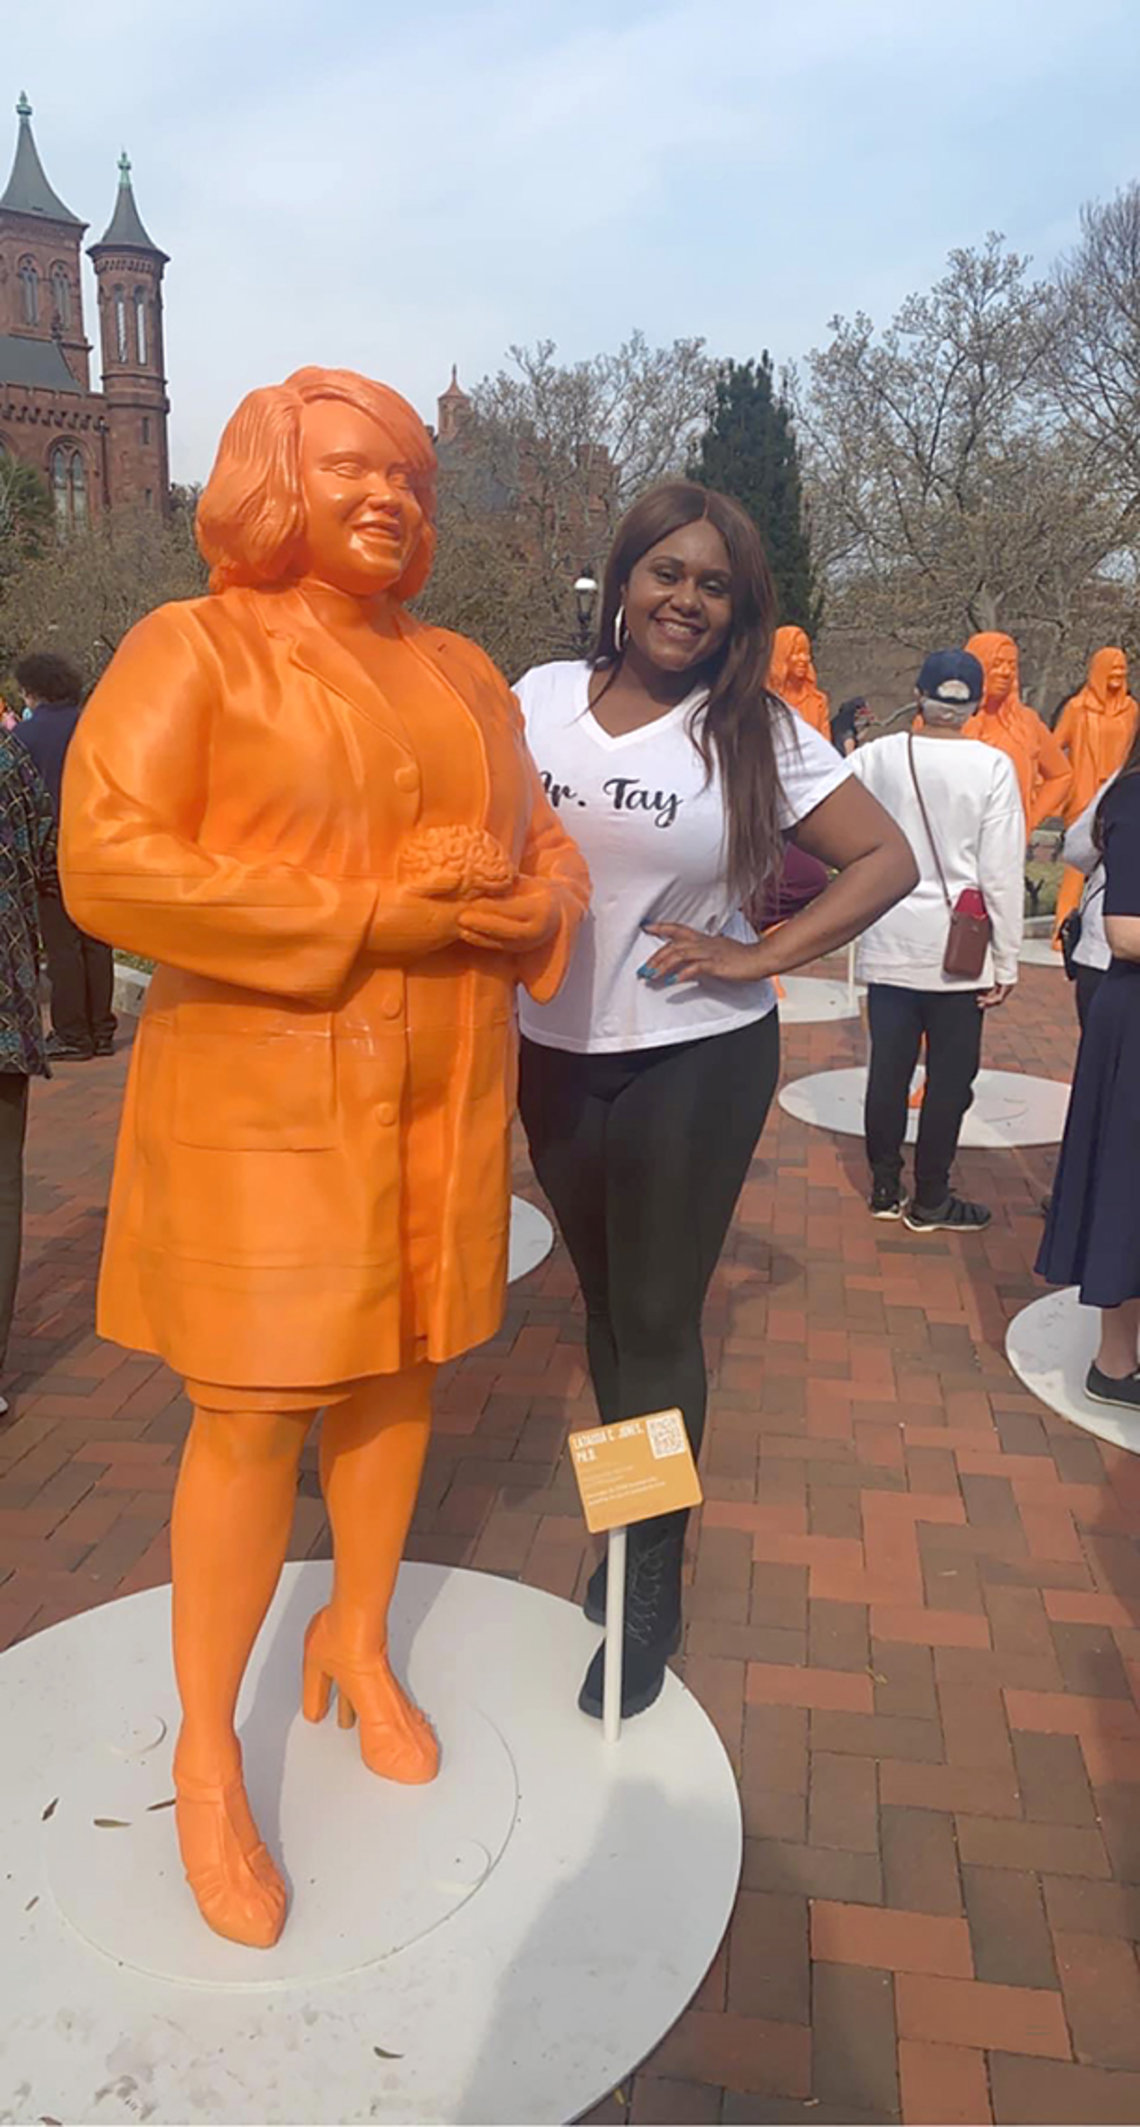 Jones stands next to an orange statue of her likeness